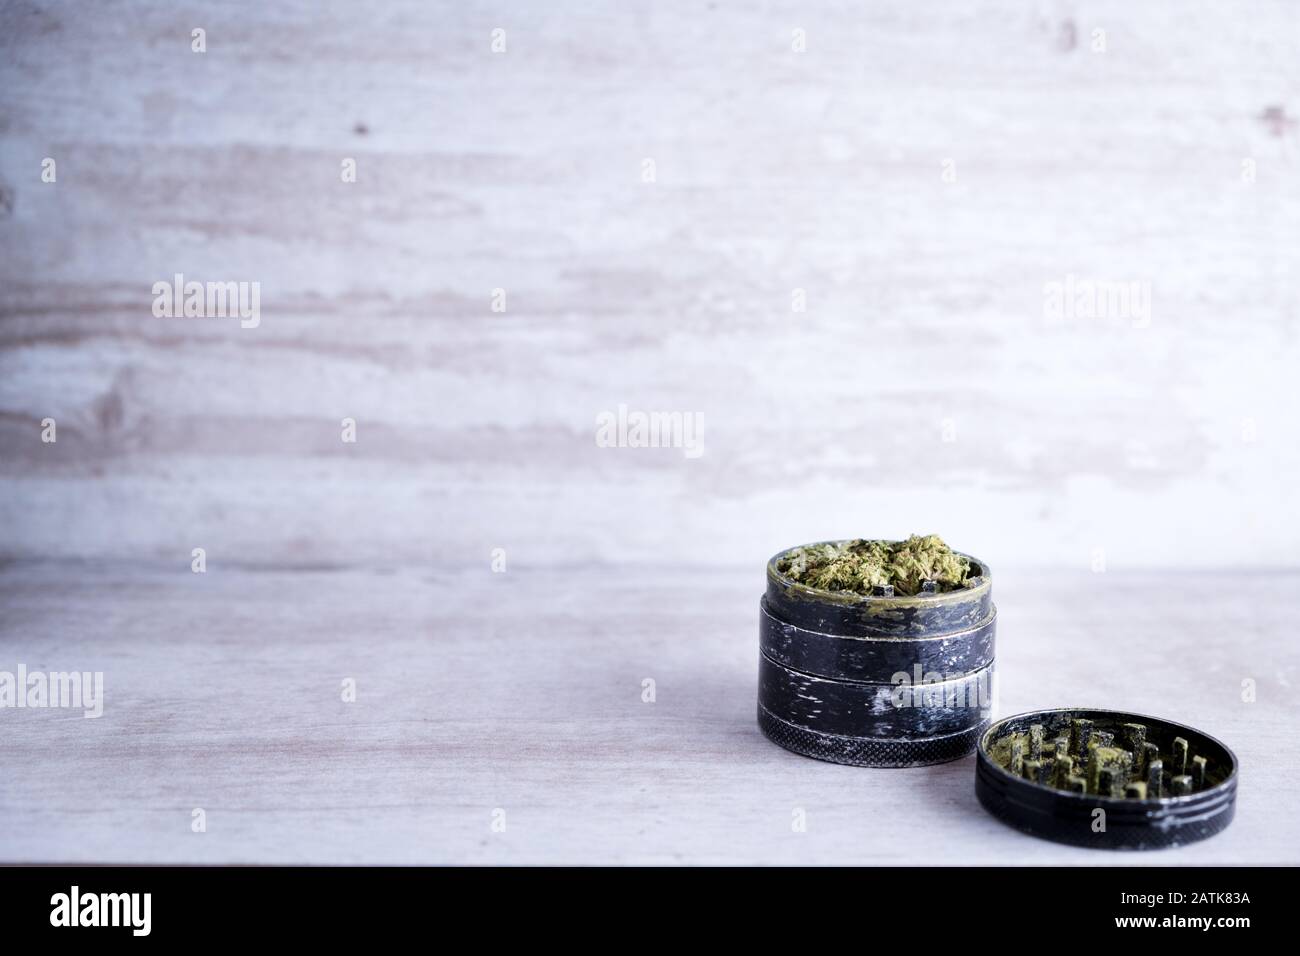 Marihuana recreativa y molino de metal en un fondo de piedra blanca después de que Illinois pasa una ley para legalizar las ventas de malezas y perdón prisión relacionada con malezas Foto de stock